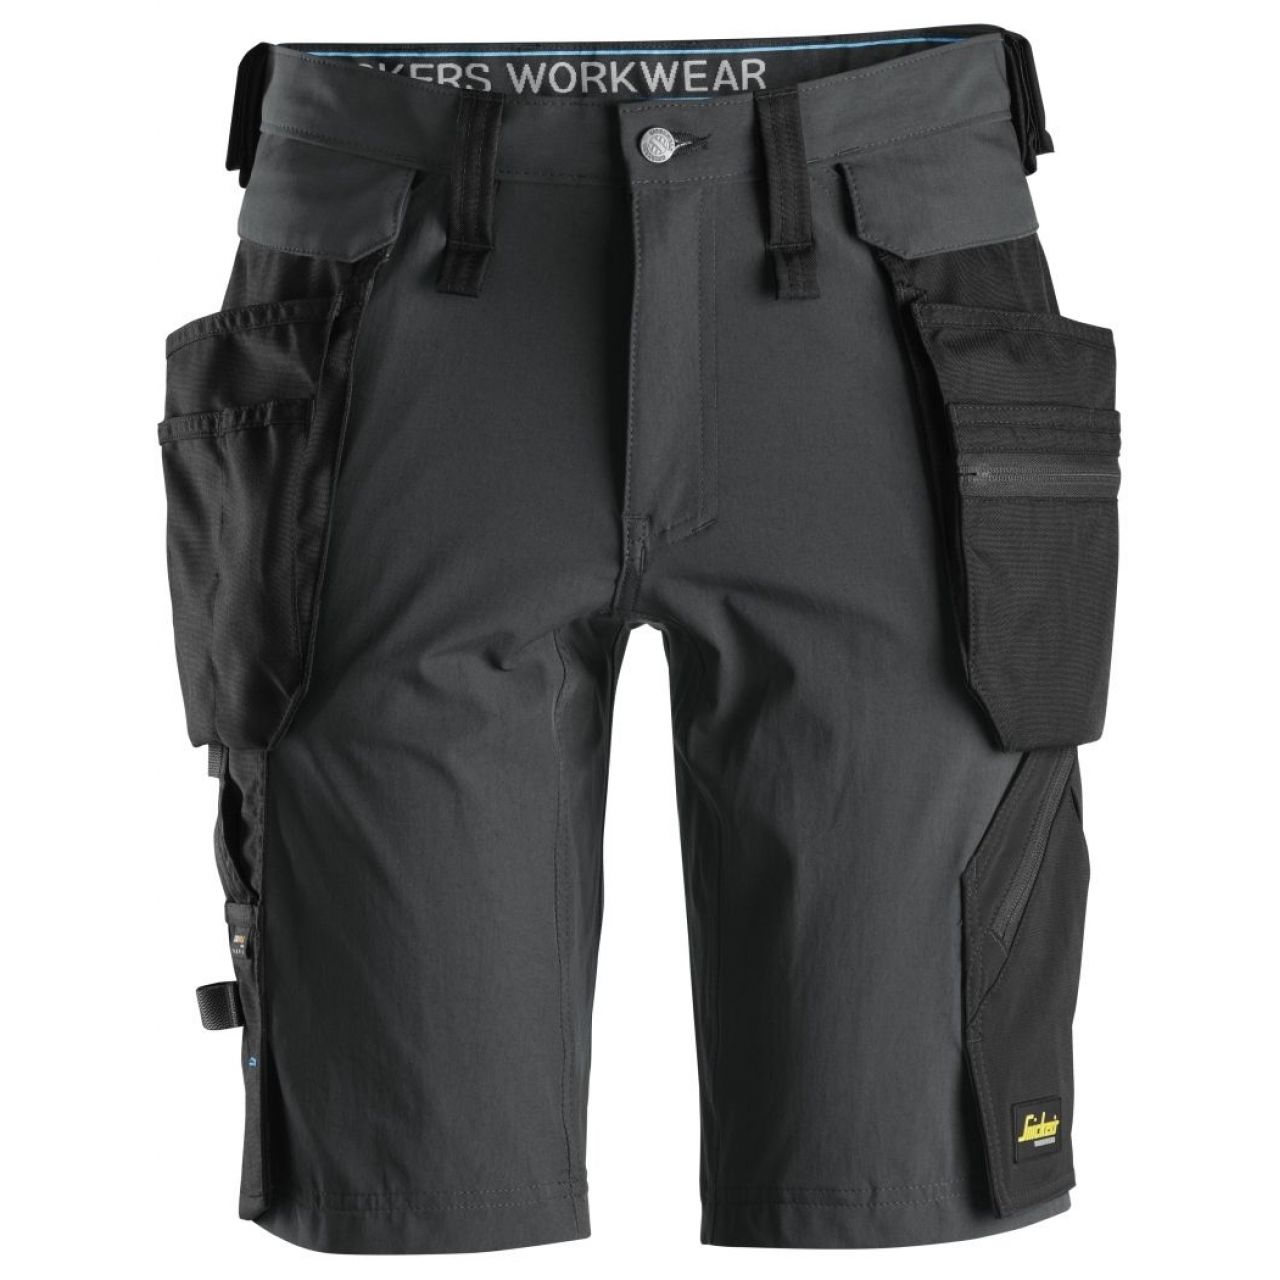 Pantalon corto + bolsillos flotantes desmontables LiteWork gris acero-negro talla 056